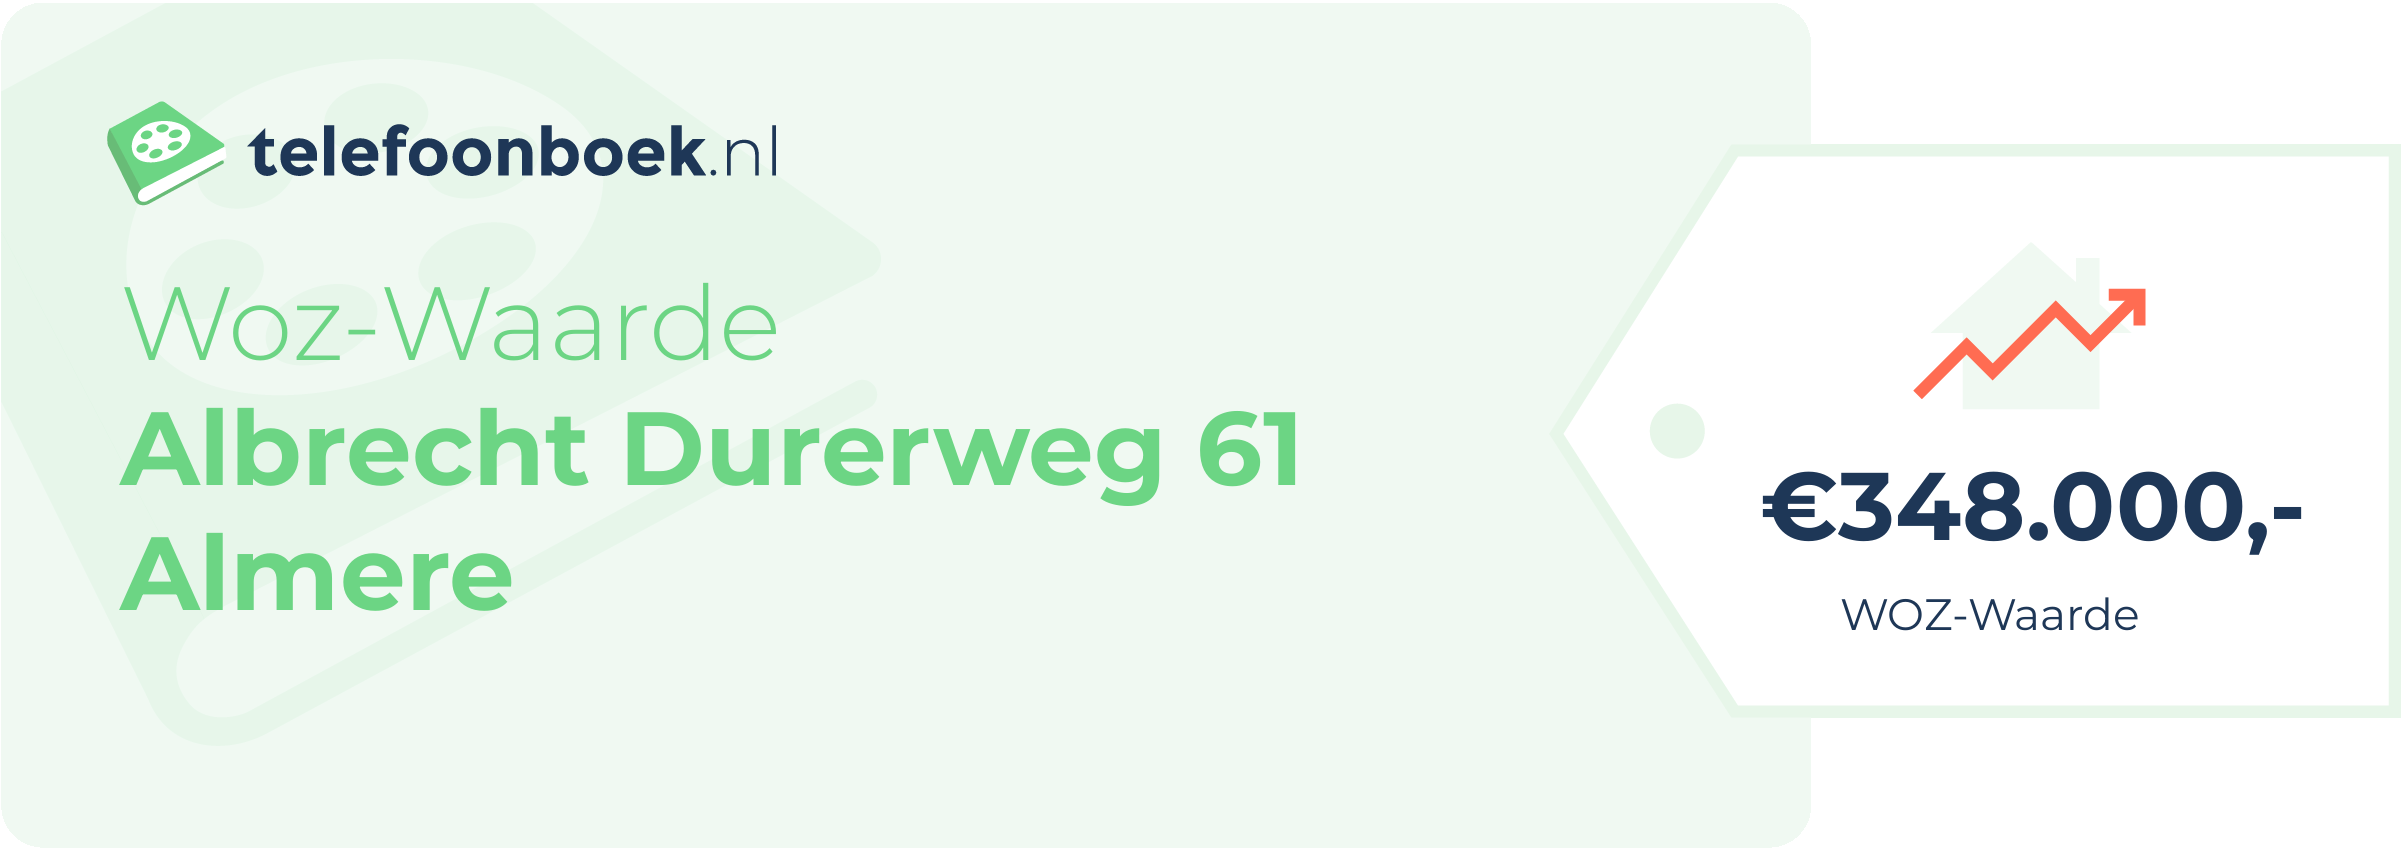 WOZ-waarde Albrecht Durerweg 61 Almere